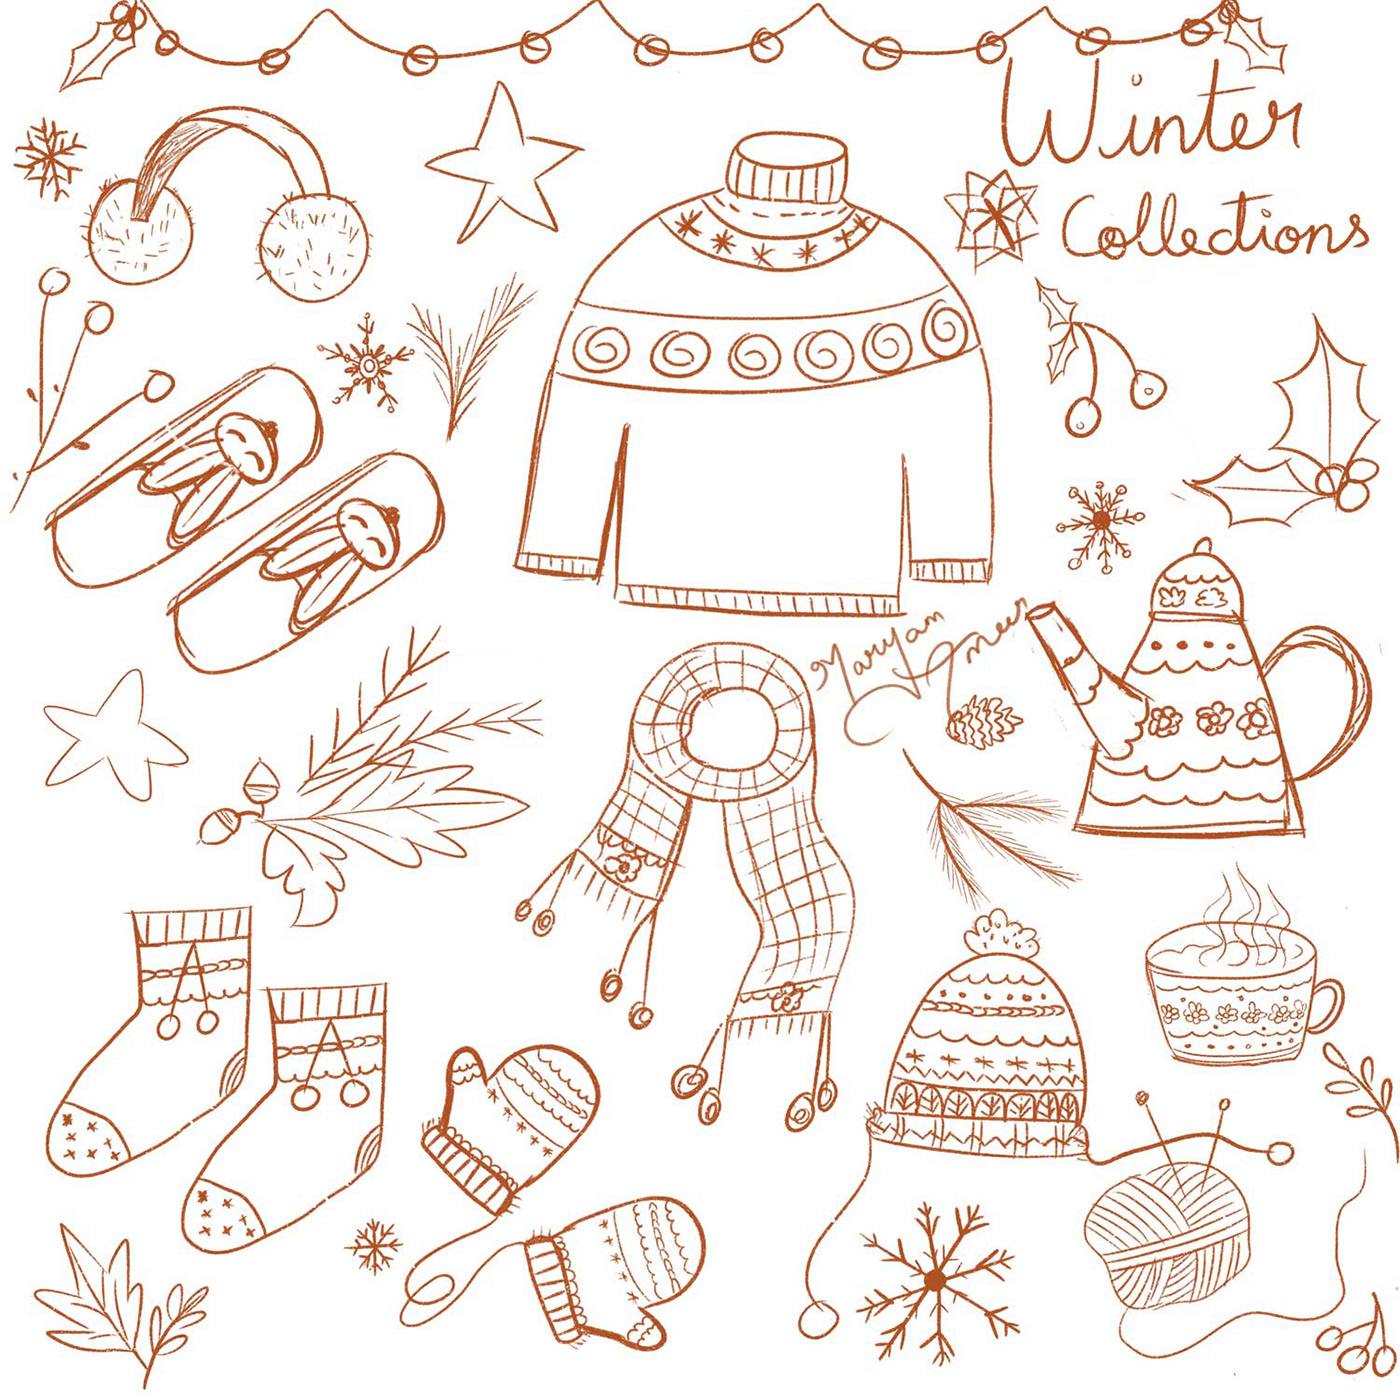 illustrations digital illustration winter children illustration